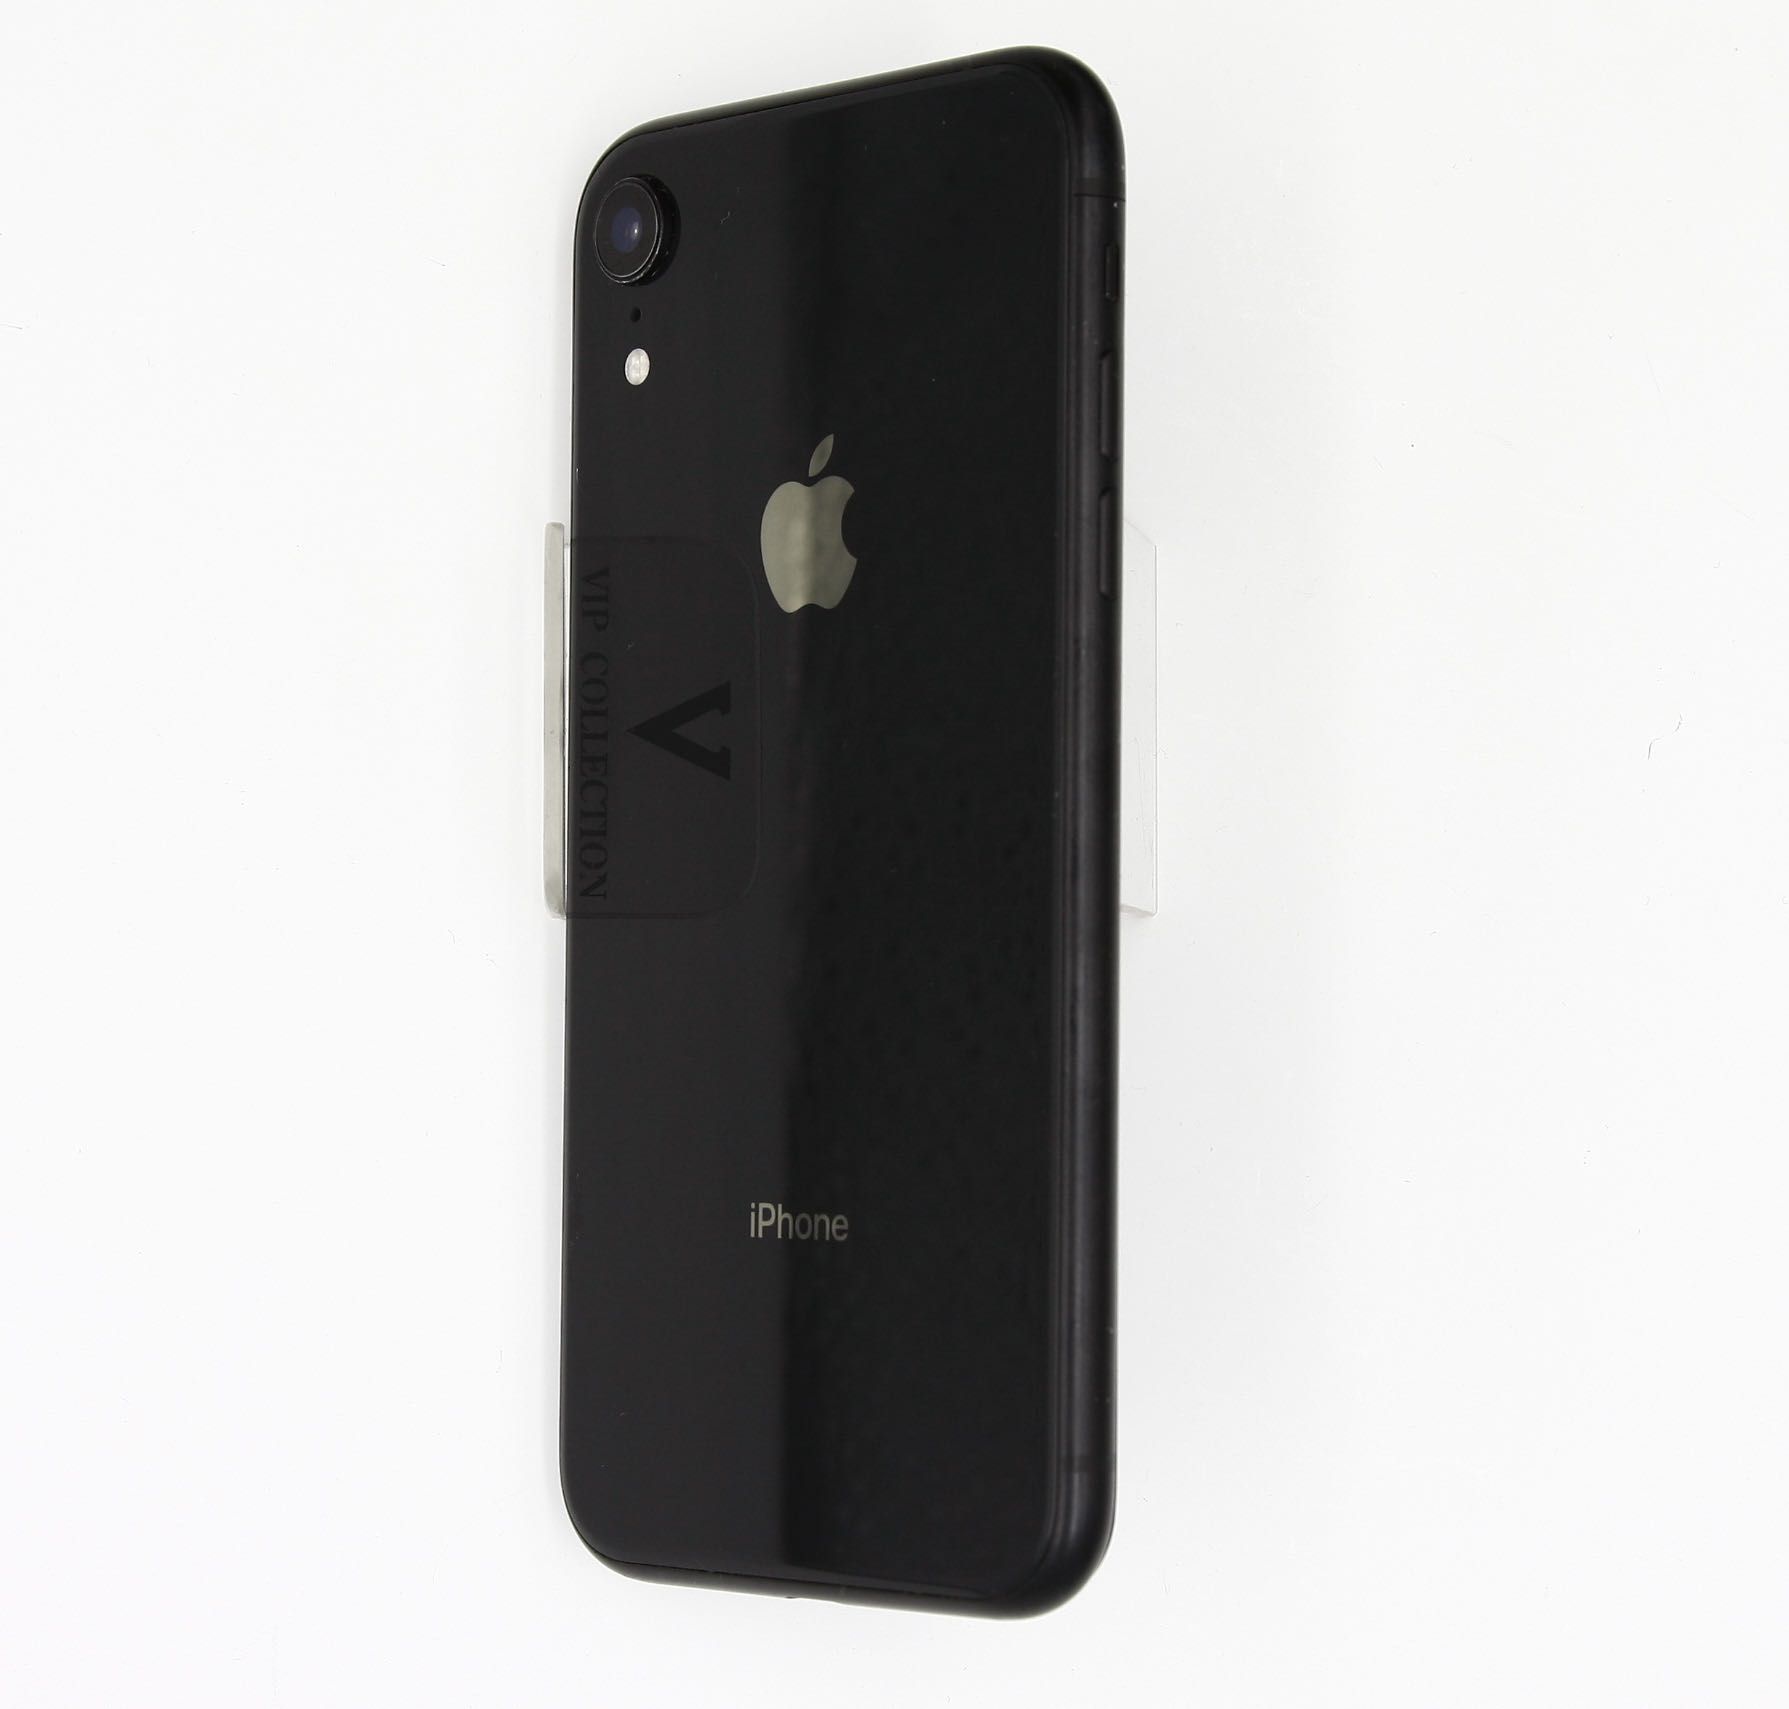 Продам б/у айфон XR 64 ГБ, Iphone XR 64 GB б/у, A1984, Black color.